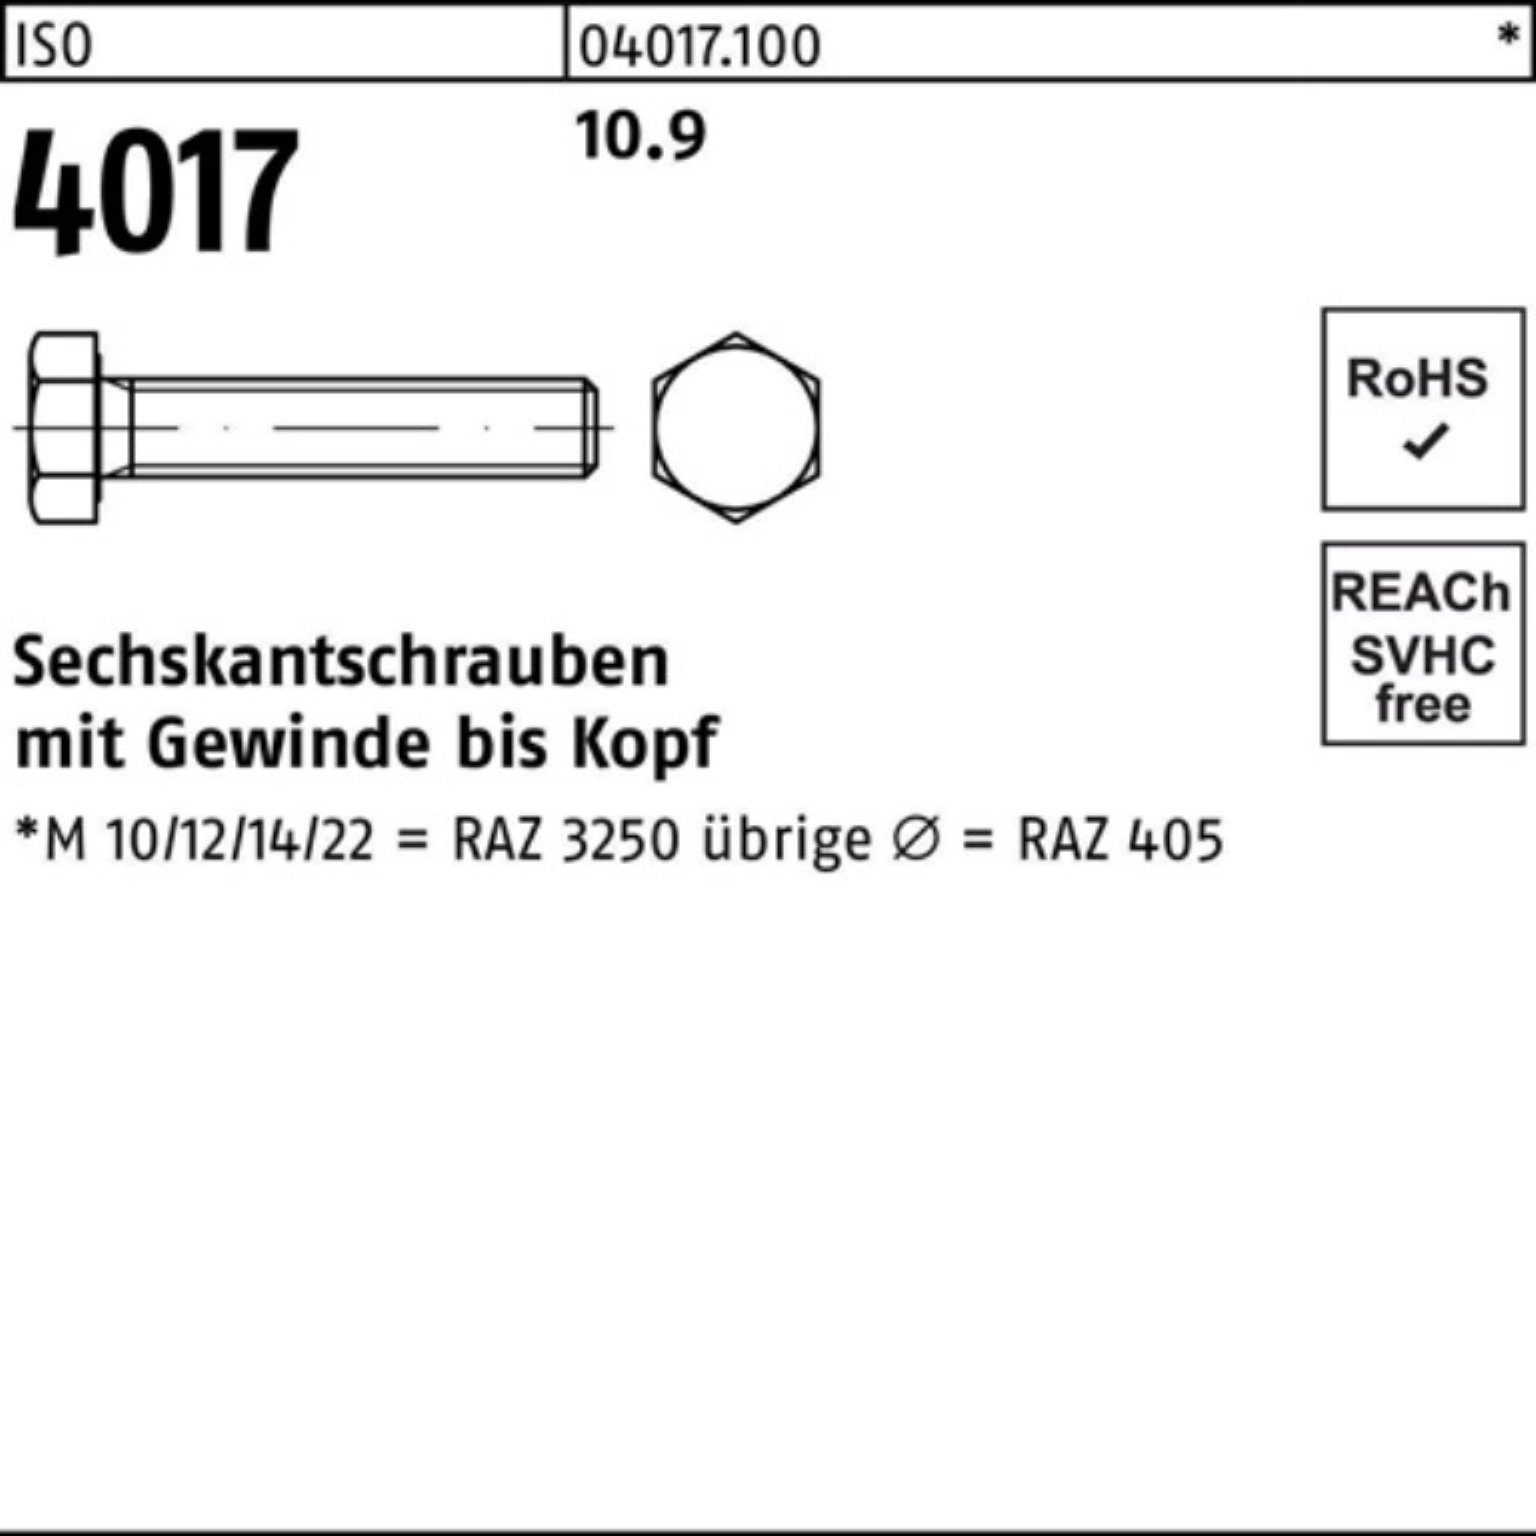 Bufab Sechskantschraube 100er 10.9 Sechskantschraube 4017 Pack 100 40 ISO ISO M8x Stück VG 90